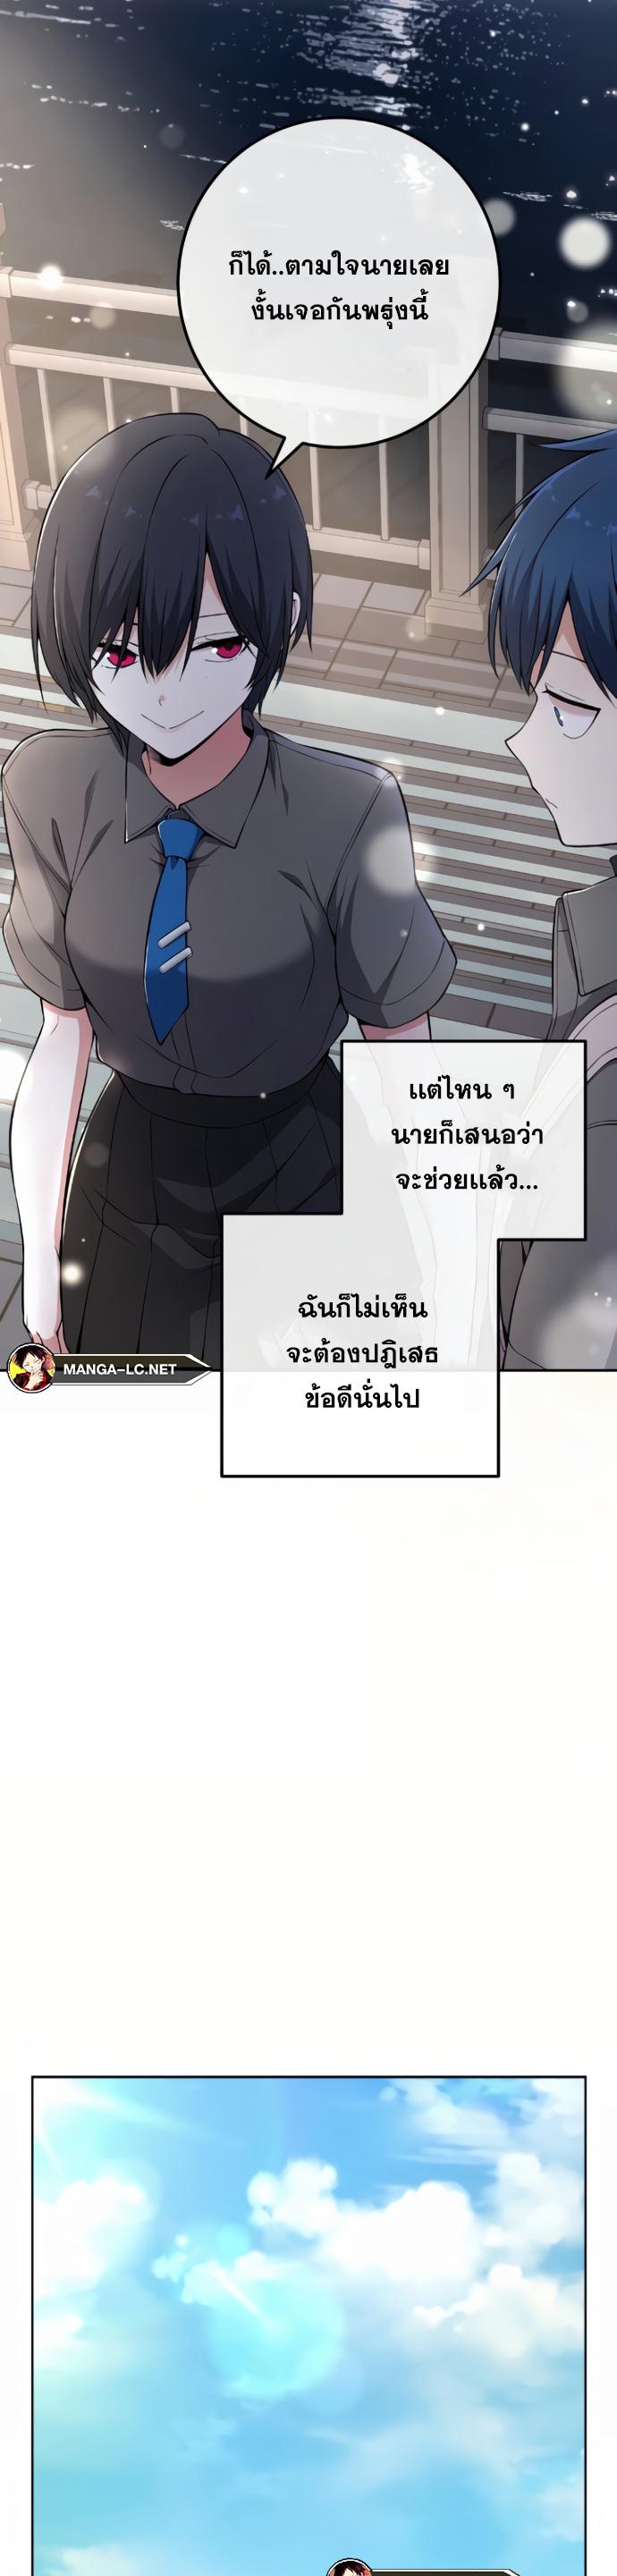 Webtoon Character Na Kang Lim 146 13